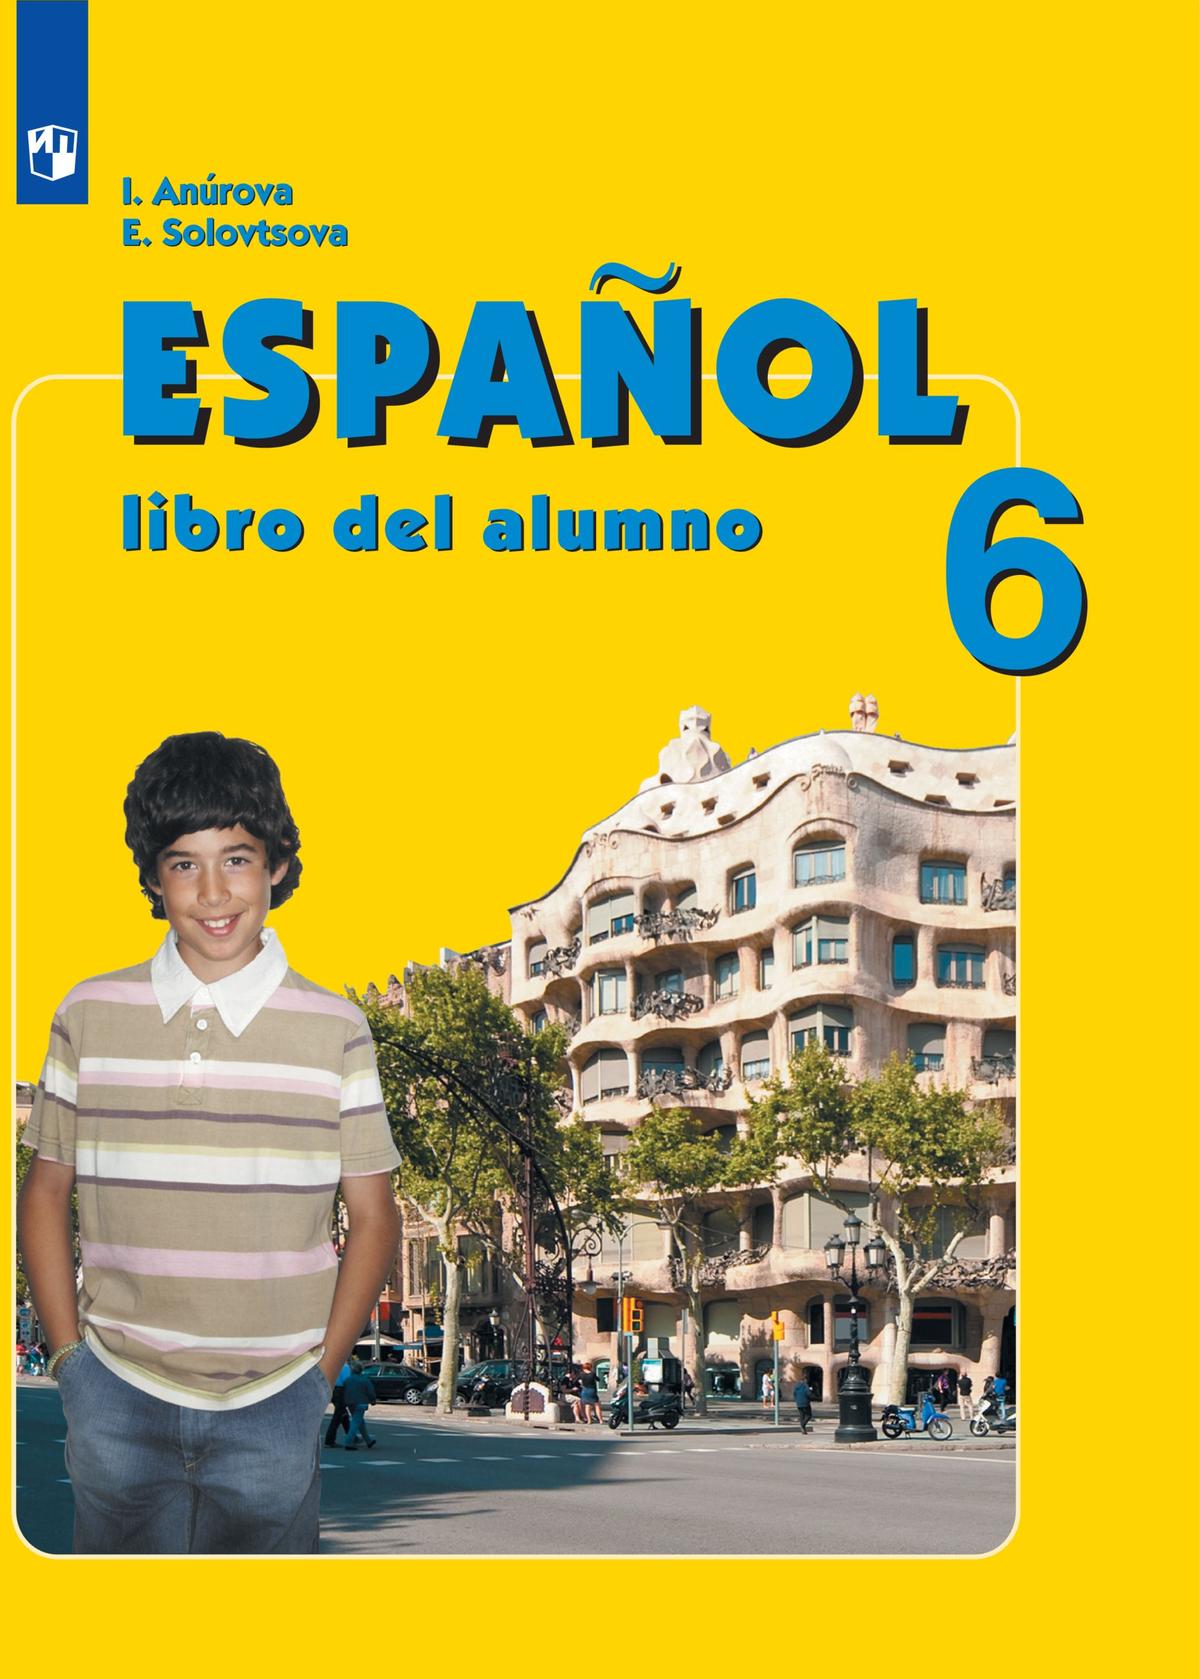 Испанский язык. 6 класс. Электронная форма учебника 1